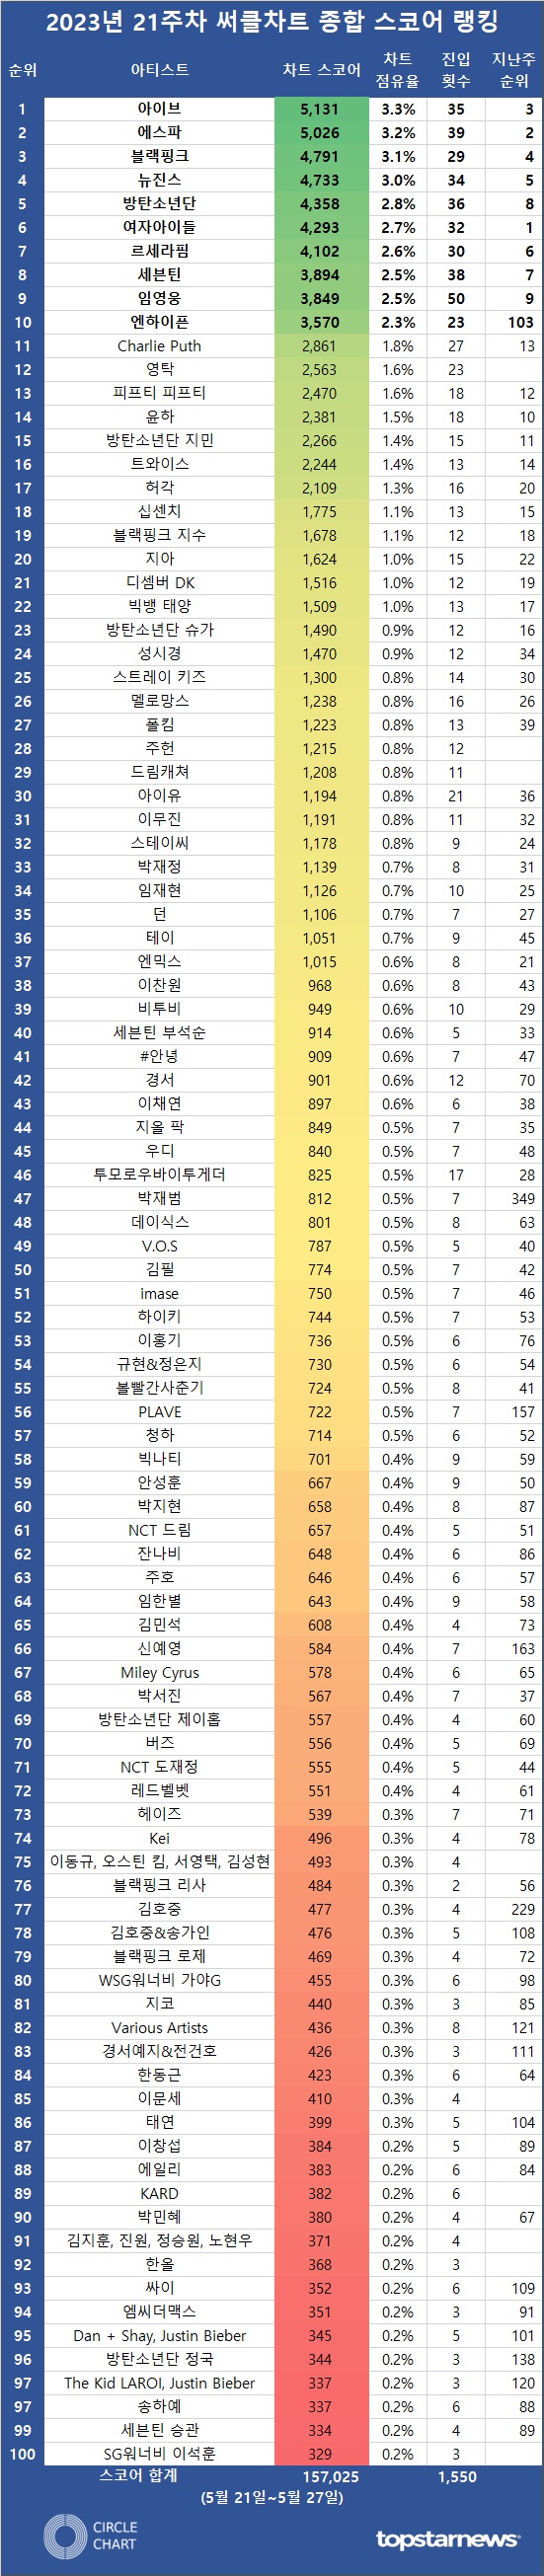 [표] 2023년 21주차 써클차트 차트종합 스코어 TOP100